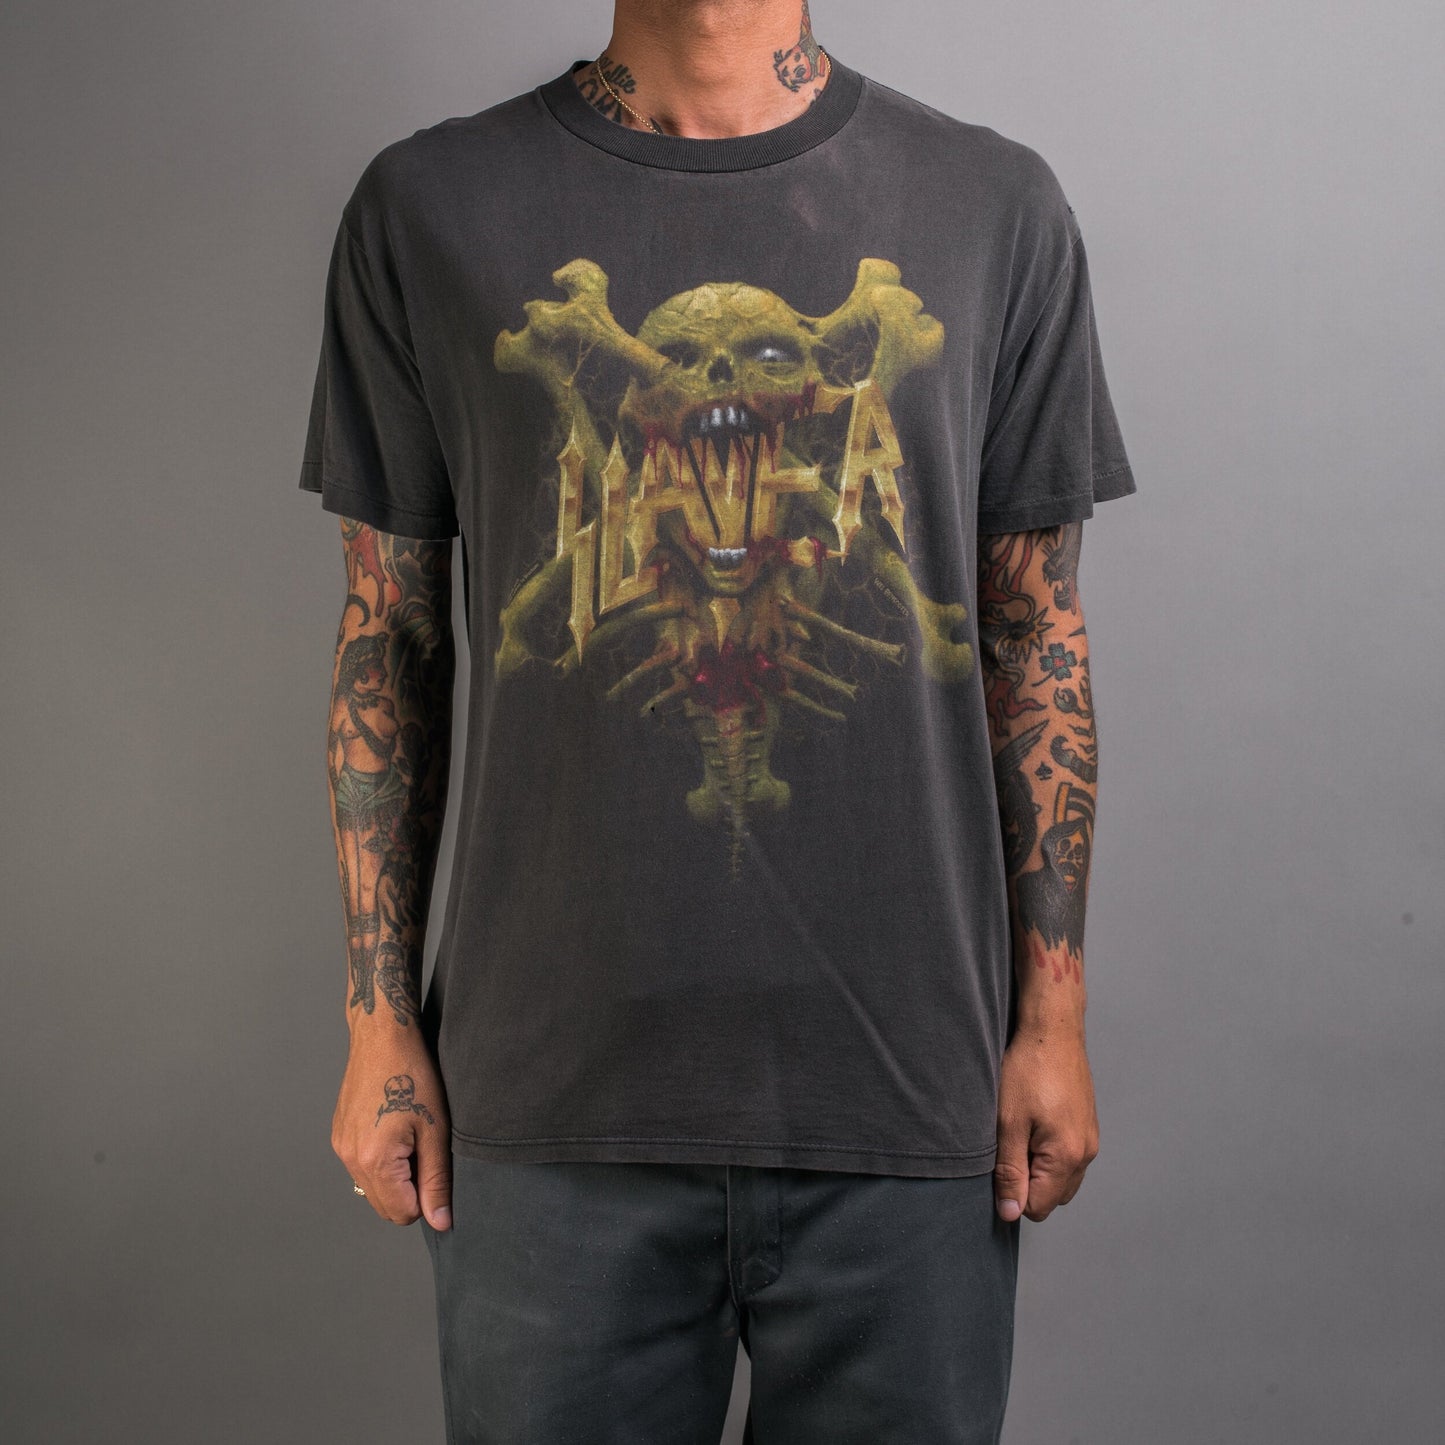 Vintage 1995 Slayer Serenity Is Murder T-Shirt